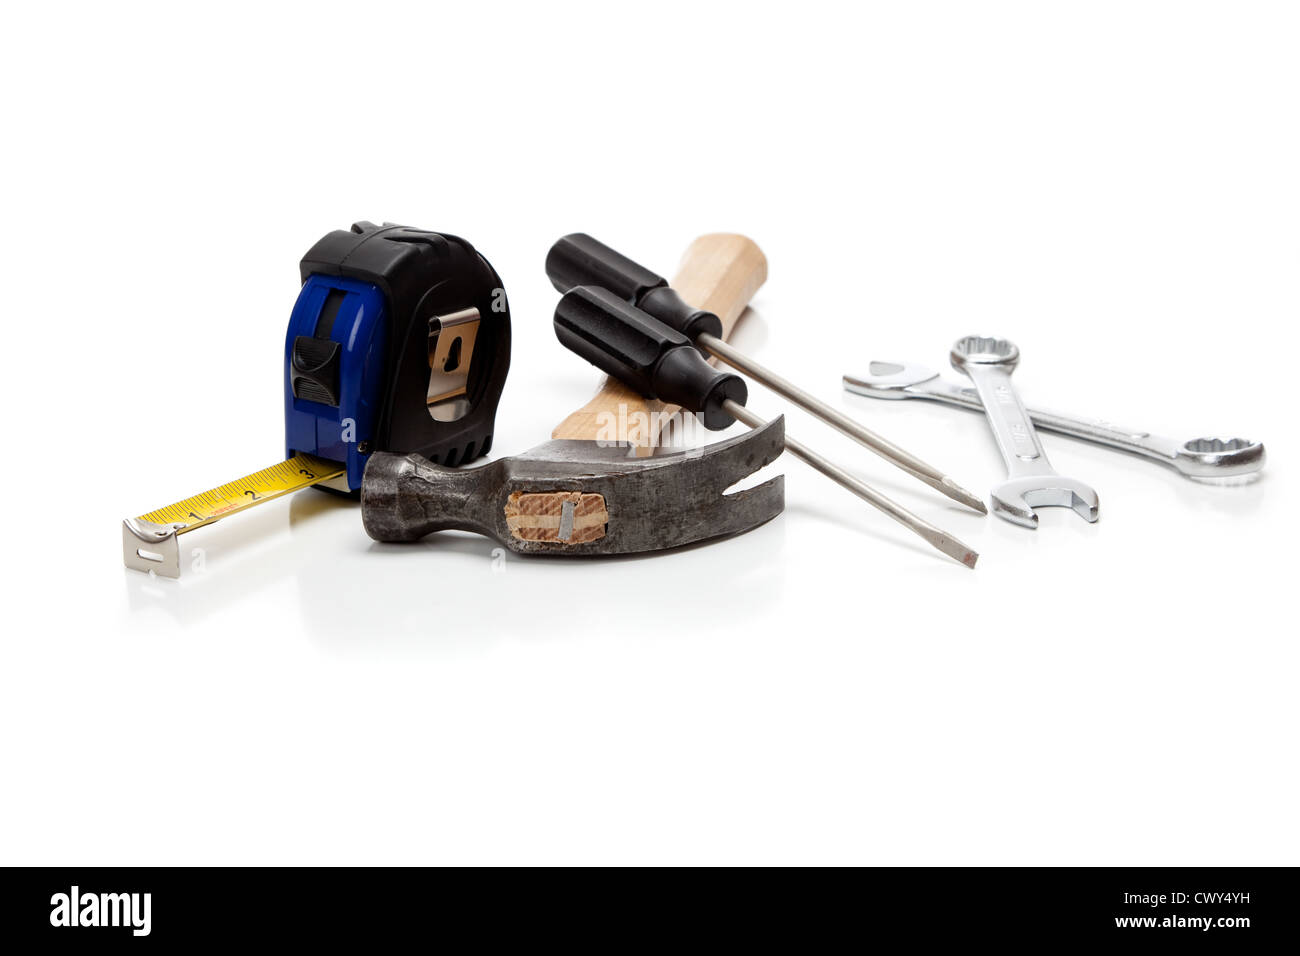 Un assortimento di strumenti tra cui un martello, un nastro di misurazione cacciaviti e chiavi su sfondo bianco Foto Stock